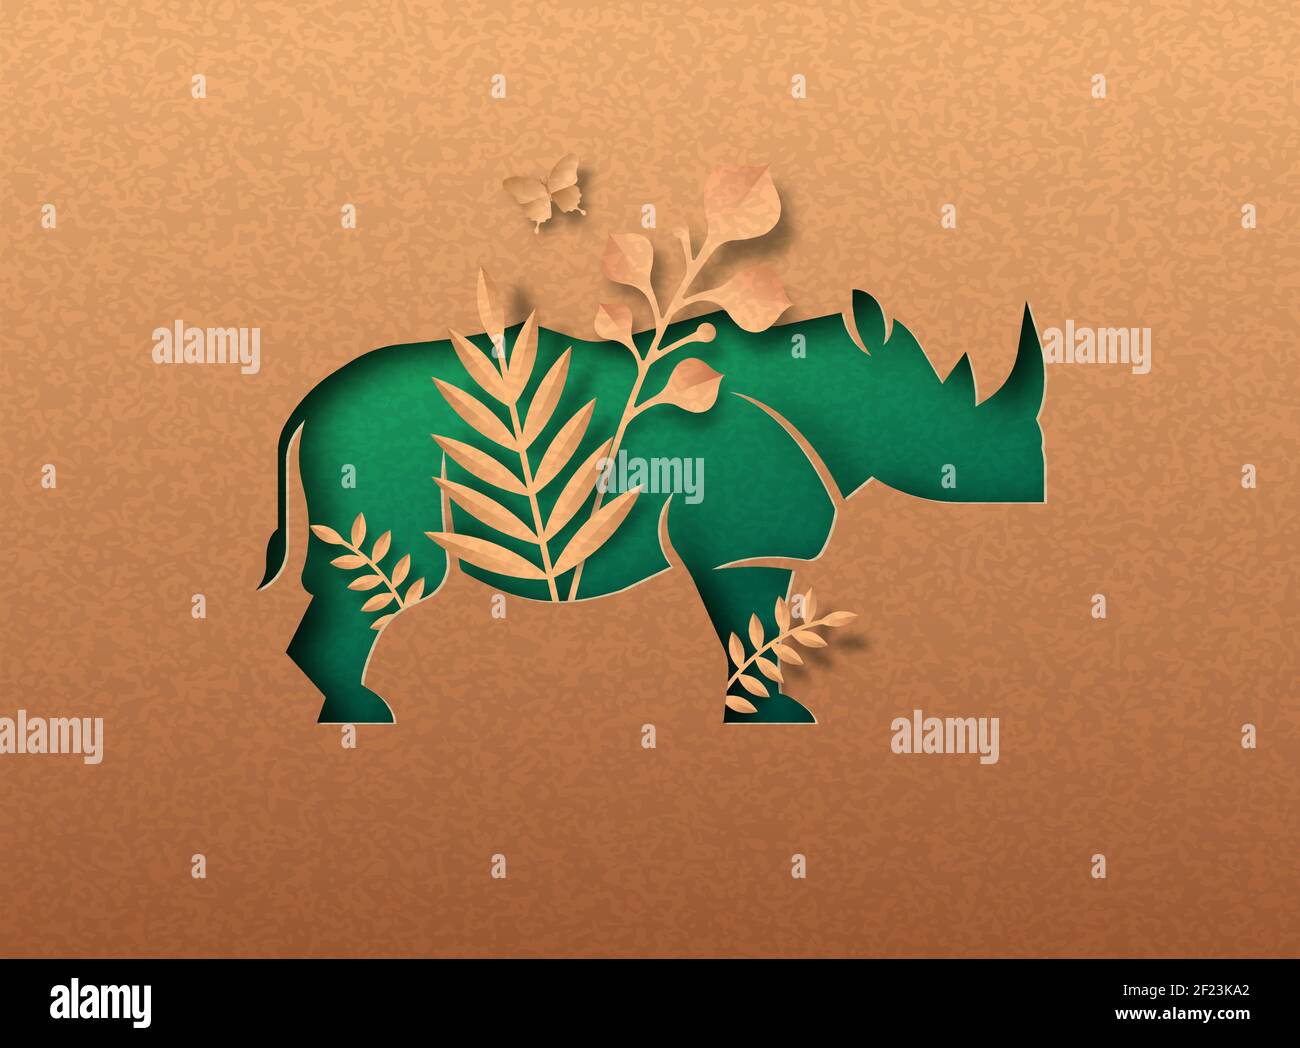 Rhinoceros Tier grün papercut Illustration mit tropischen Pflanzen Blatt. Recyceltes Papier Textur Nashorn Ausschnitt Konzept für Wildlife Schutz, Anti poa Stock Vektor